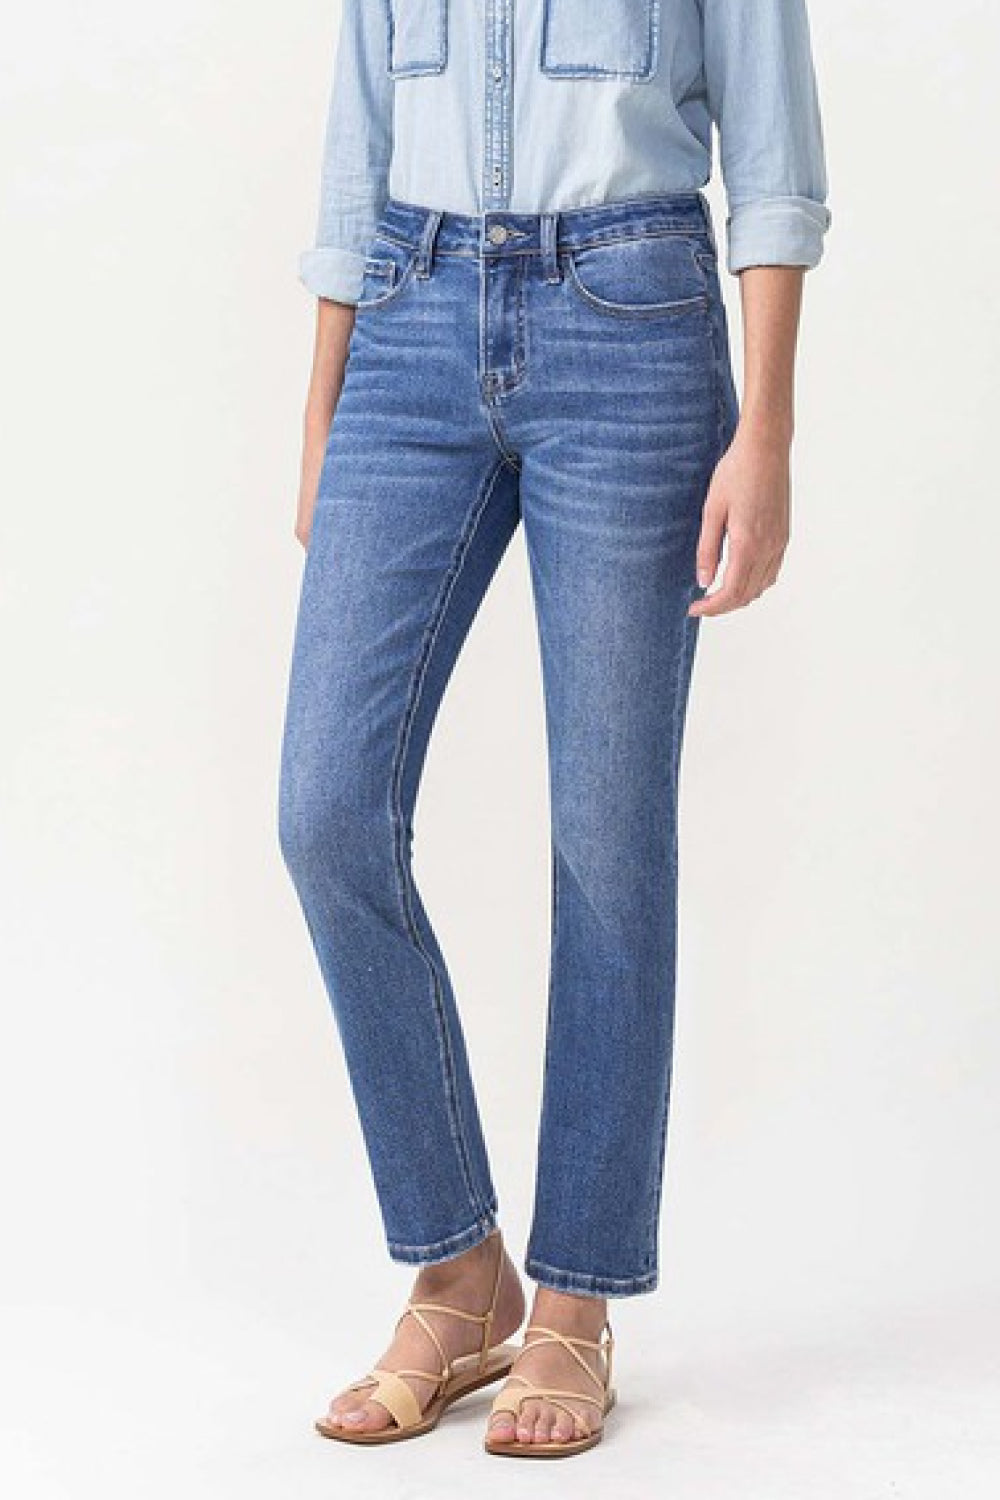 Lovervet Full Size Maggie Midrise Slim Ankle Straight Jeans - bertofonsi